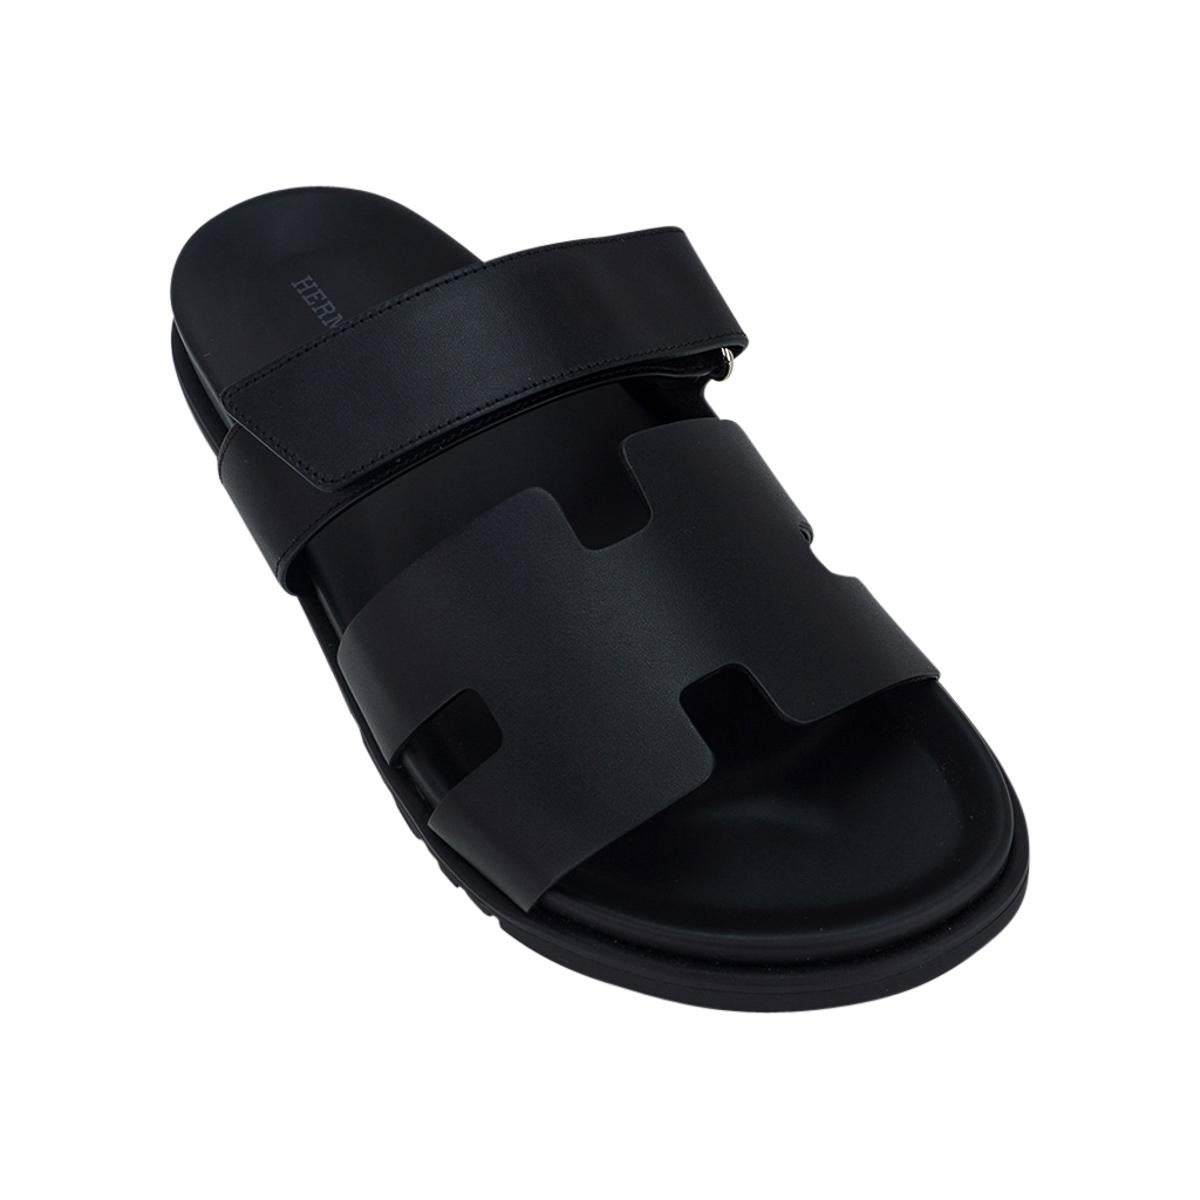 Mightychic propose une paire de sandales Chypre d'Hermès pour homme, en édition limitée et de couleur noire.
Cuir de veau noir, semelle intérieure anatomique noire et semelle en caoutchouc noir embossé.
La sangle sur le pied est réglable grâce à une